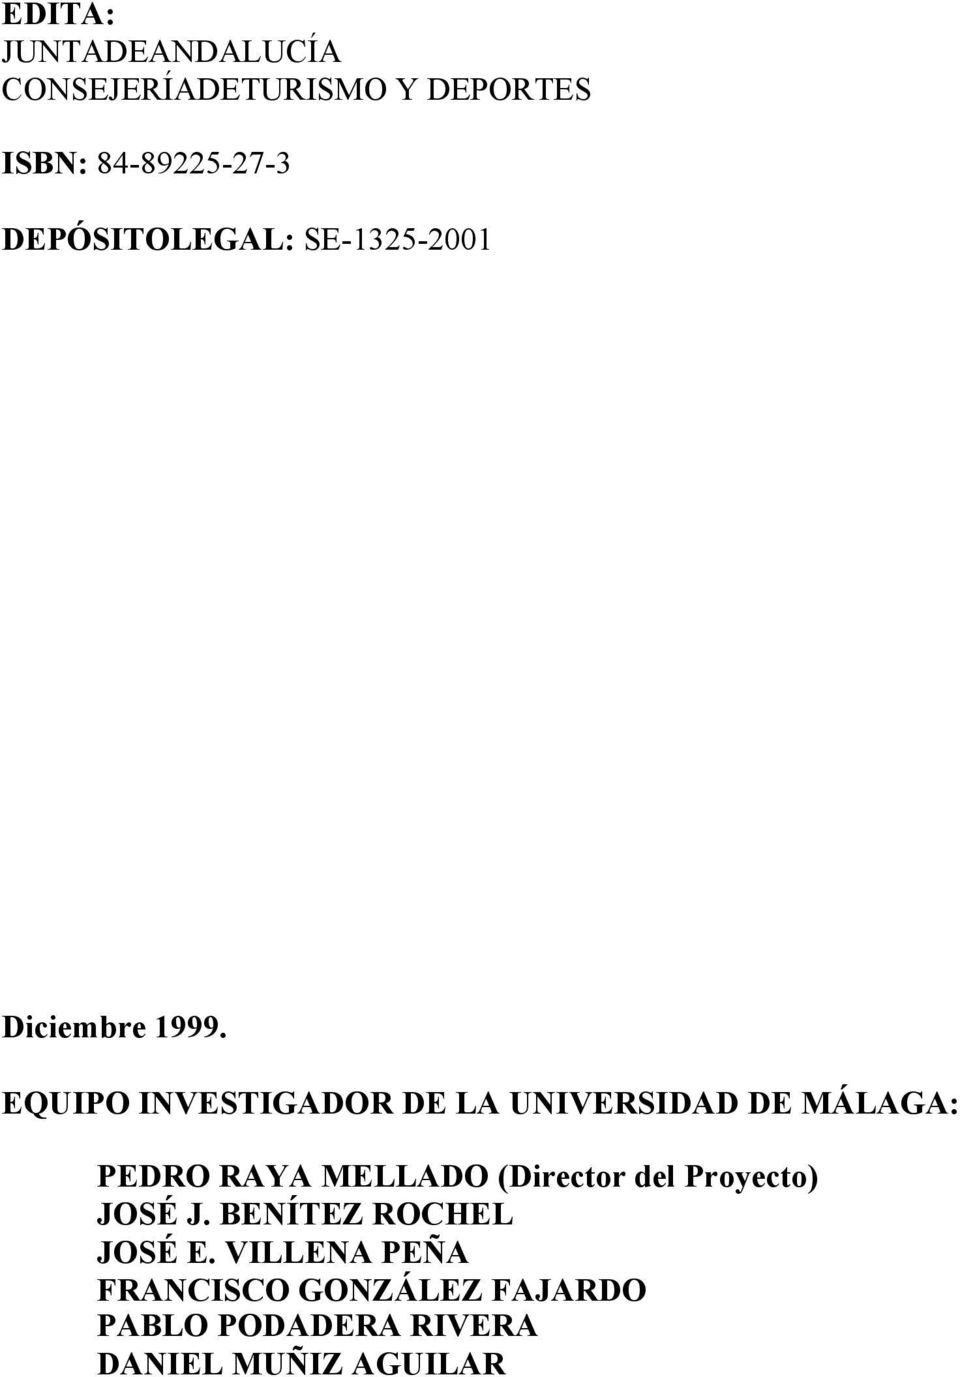 EQUIPO INVESTIGADOR DE LA UNIVERSIDAD DE MÁLAGA: PEDRO RAYA MELLADO (Director